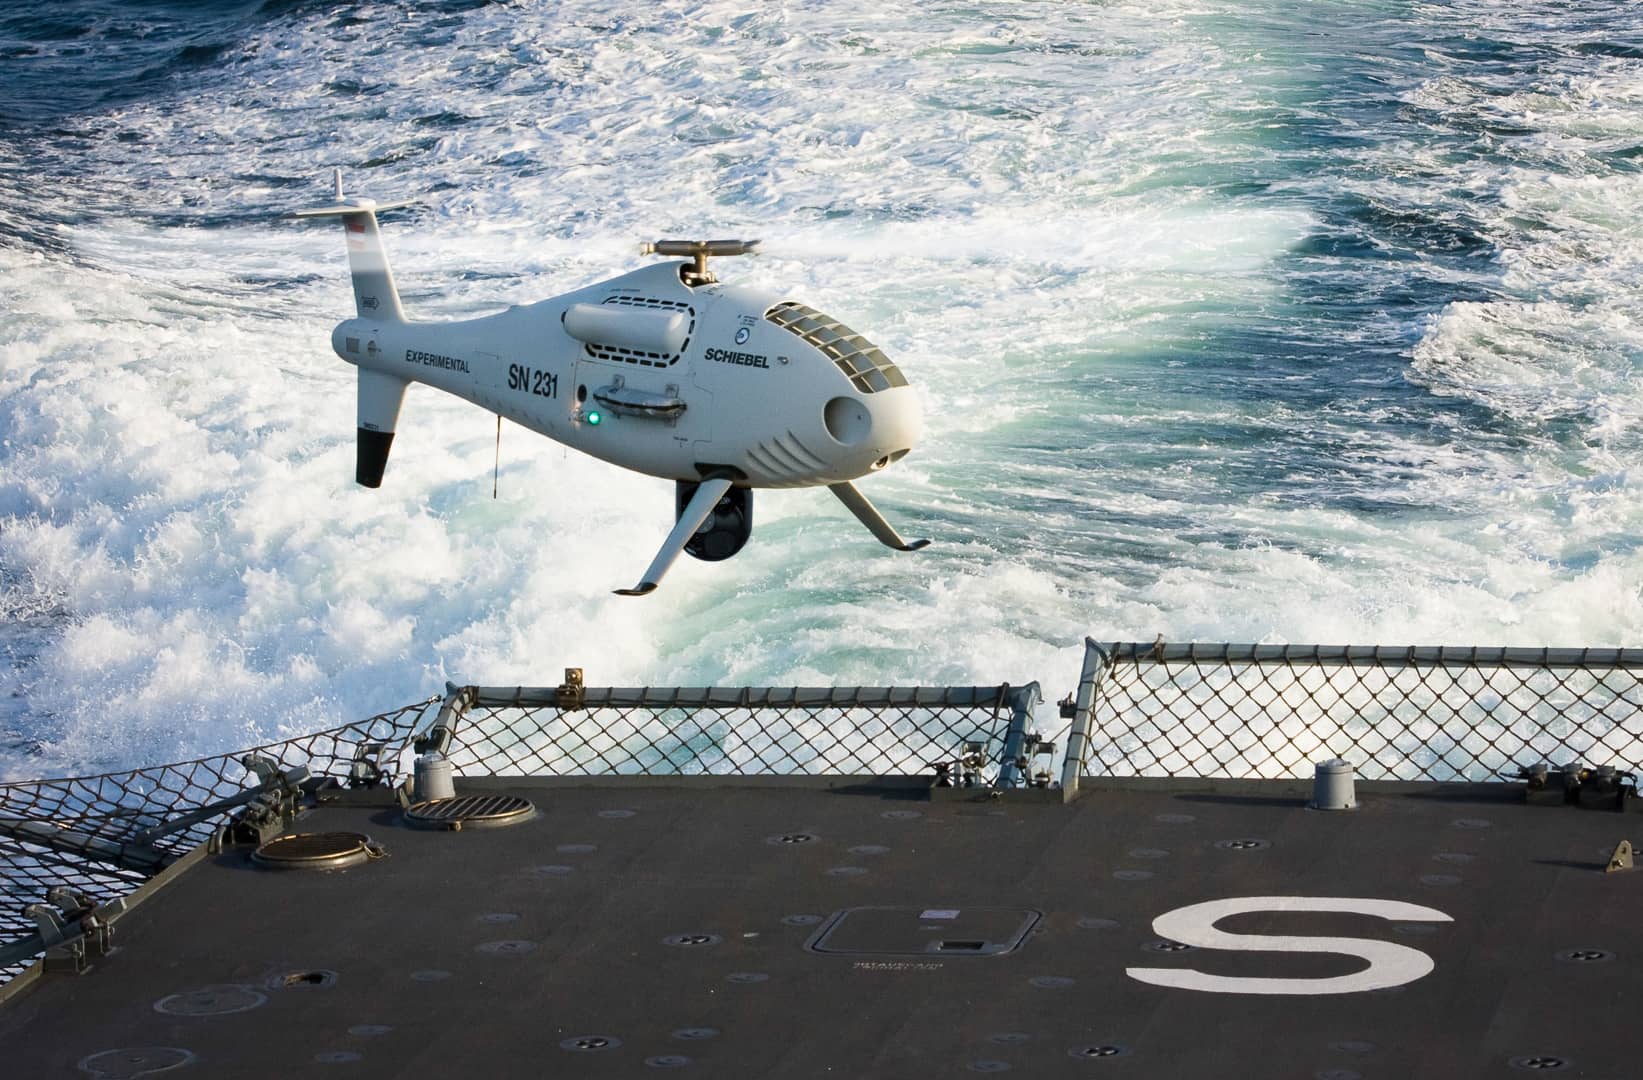 国内外普遍高度重视舰载无人机的发展,无人直升机作为无人机家族中的